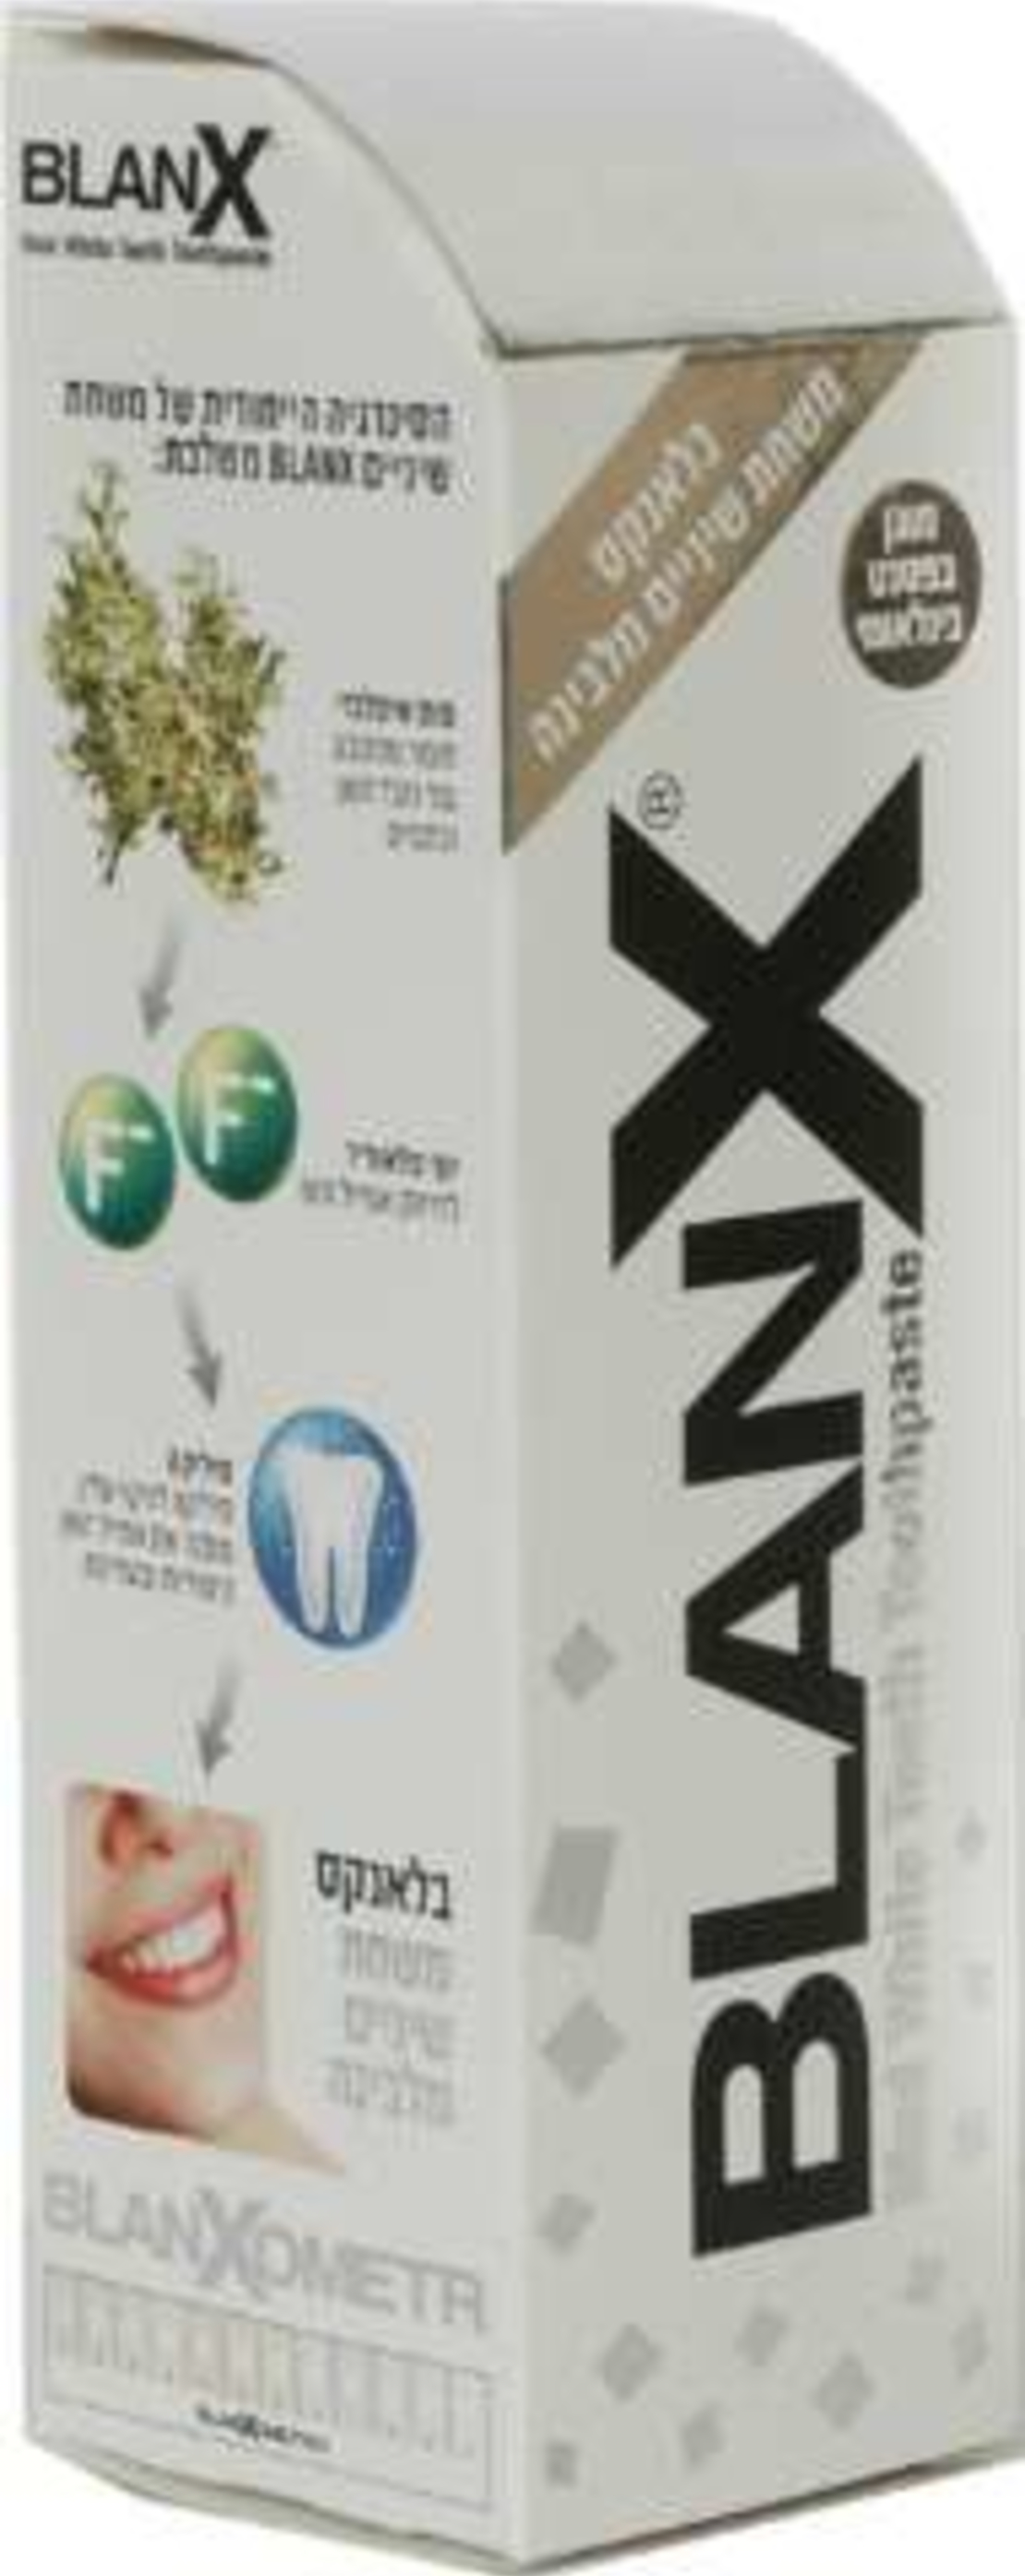 בלאנקס שפופרת - משחת שיניים מלבינה BlanX